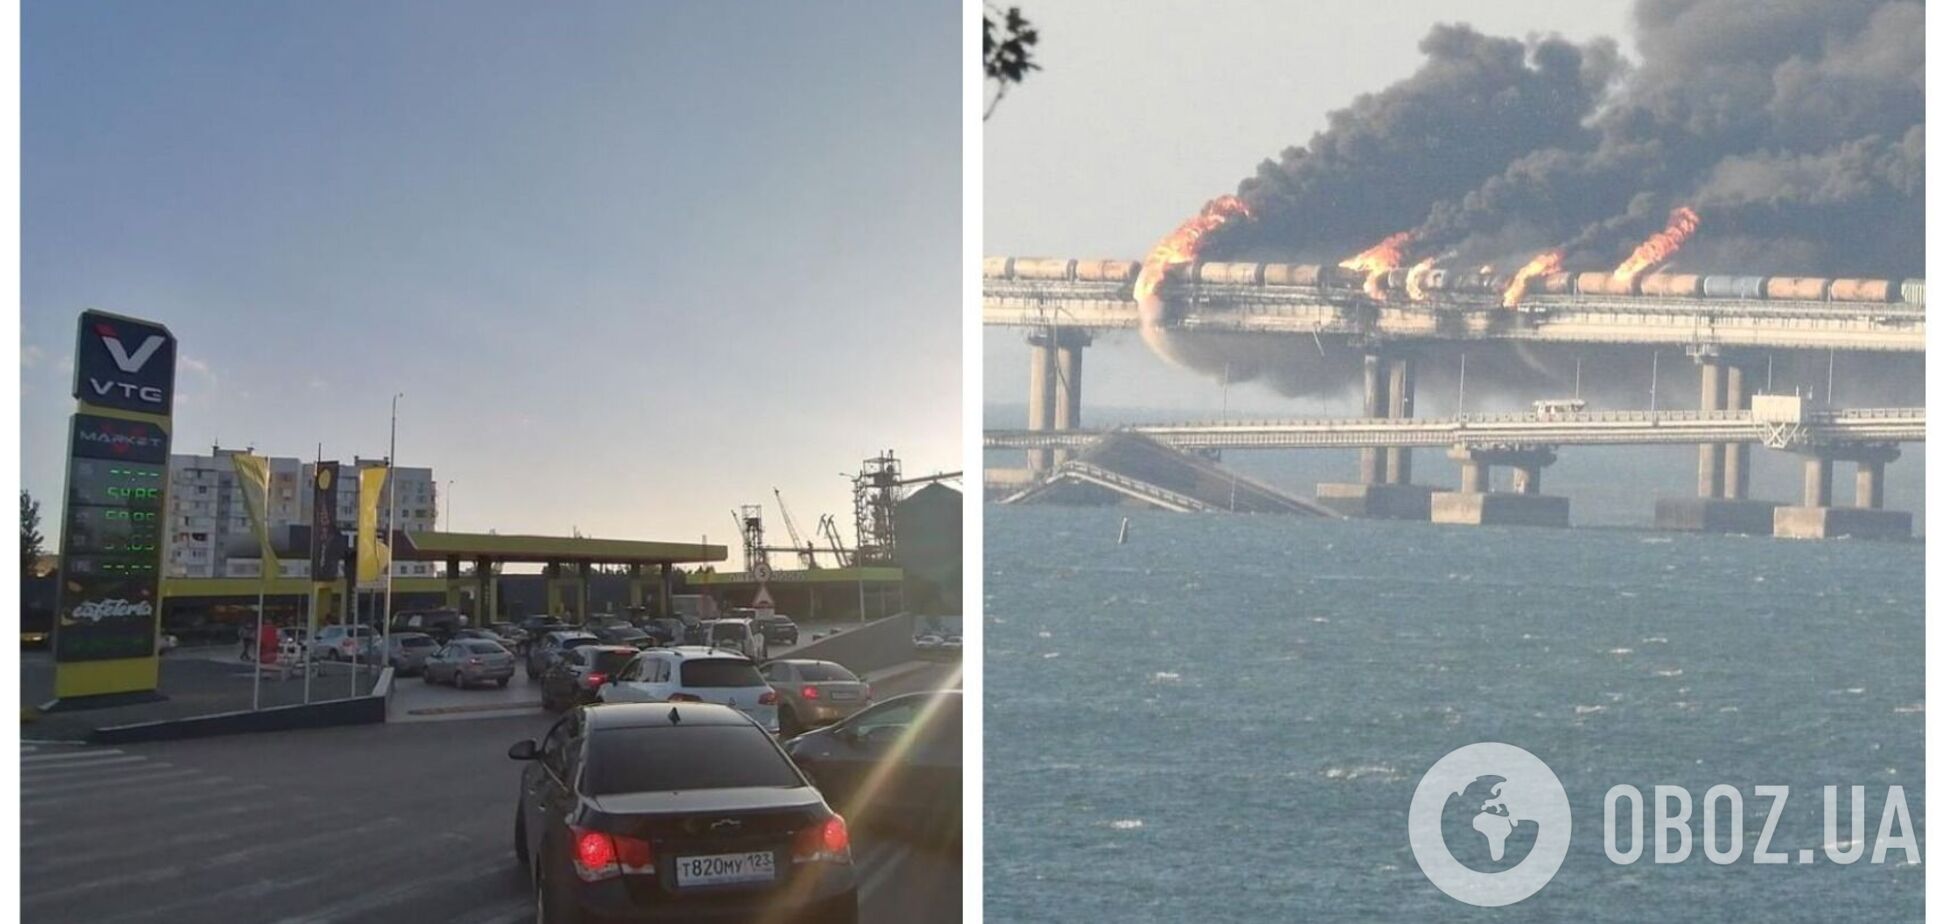 В России заявили о подрыве на Крымском мосту и признали обрушение пролетов: на АЗС начали собираться очереди. Фото и видео